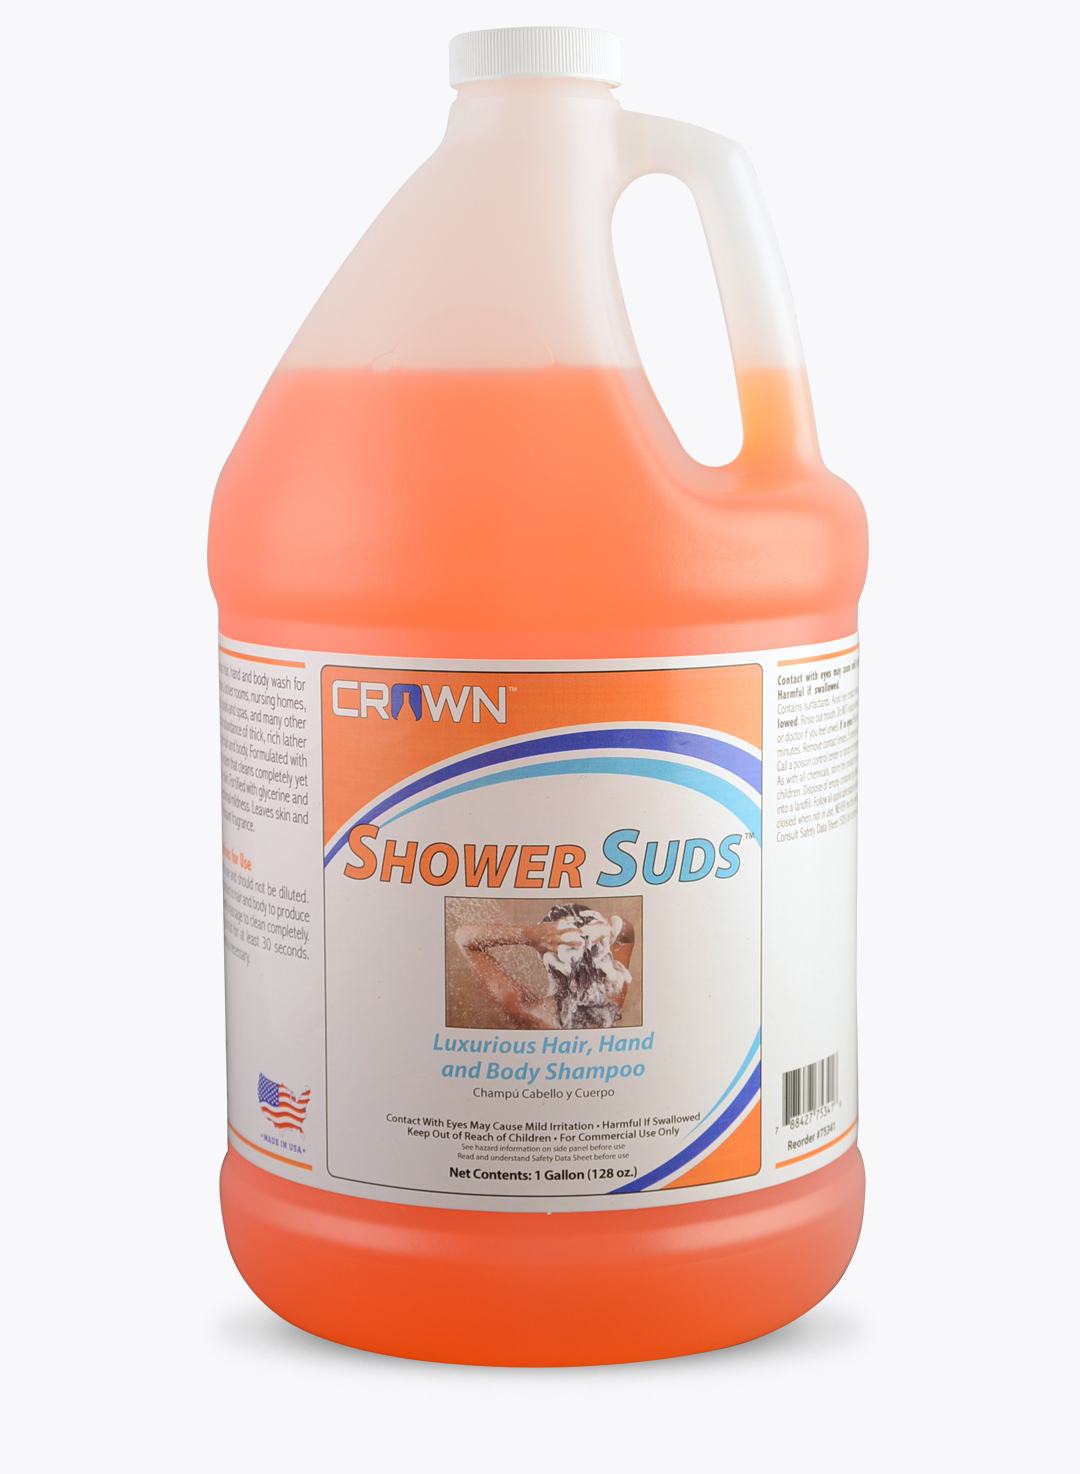 Shower Suds